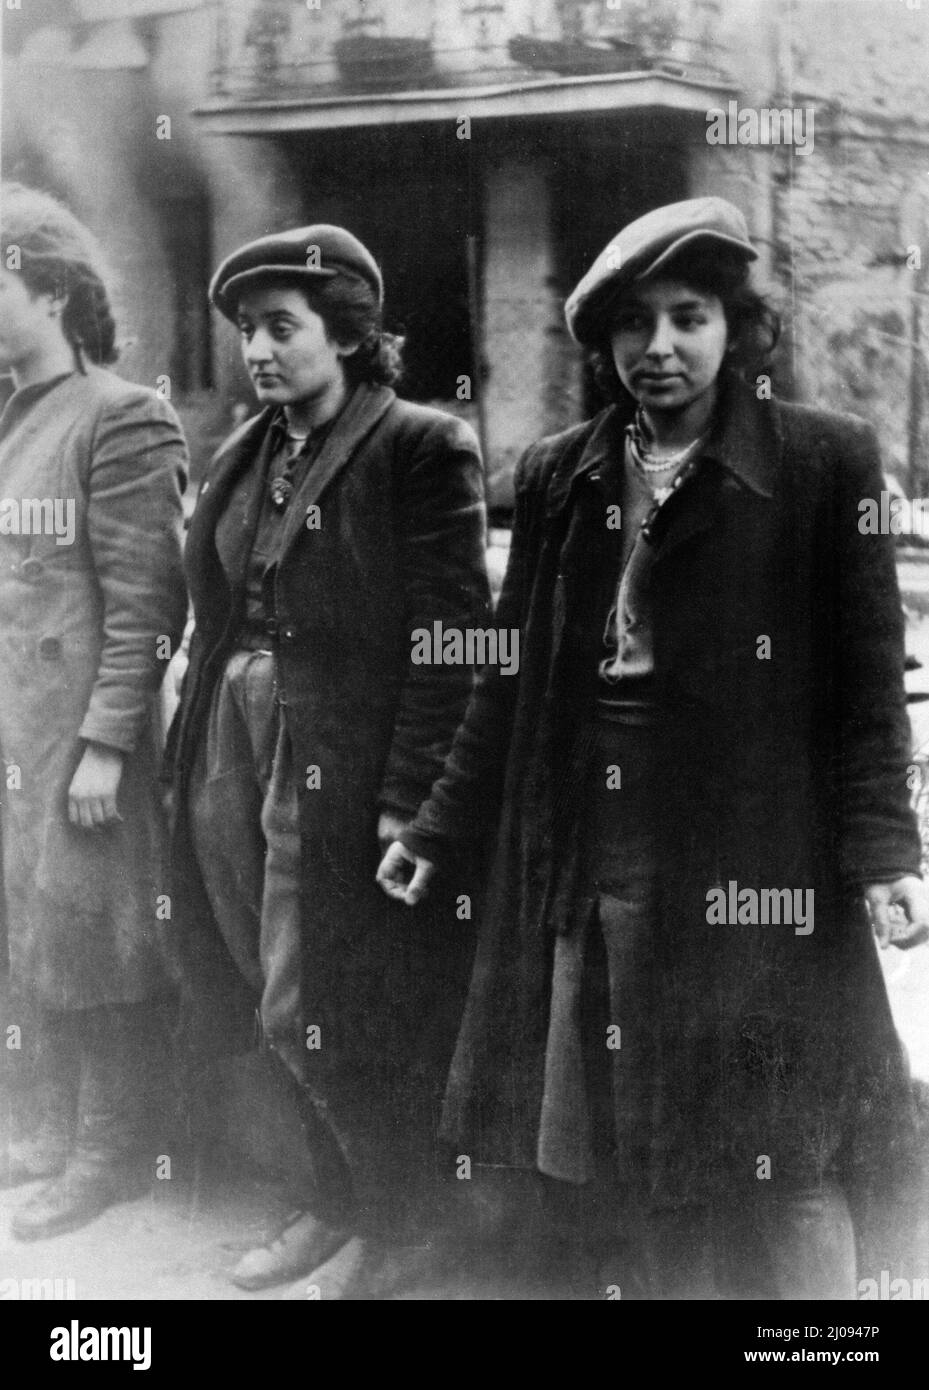 Aufstand im Warschauer Ghetto - Hehalutz-Frauen, die mit Waffen gefangen genommen wurden Stockfoto